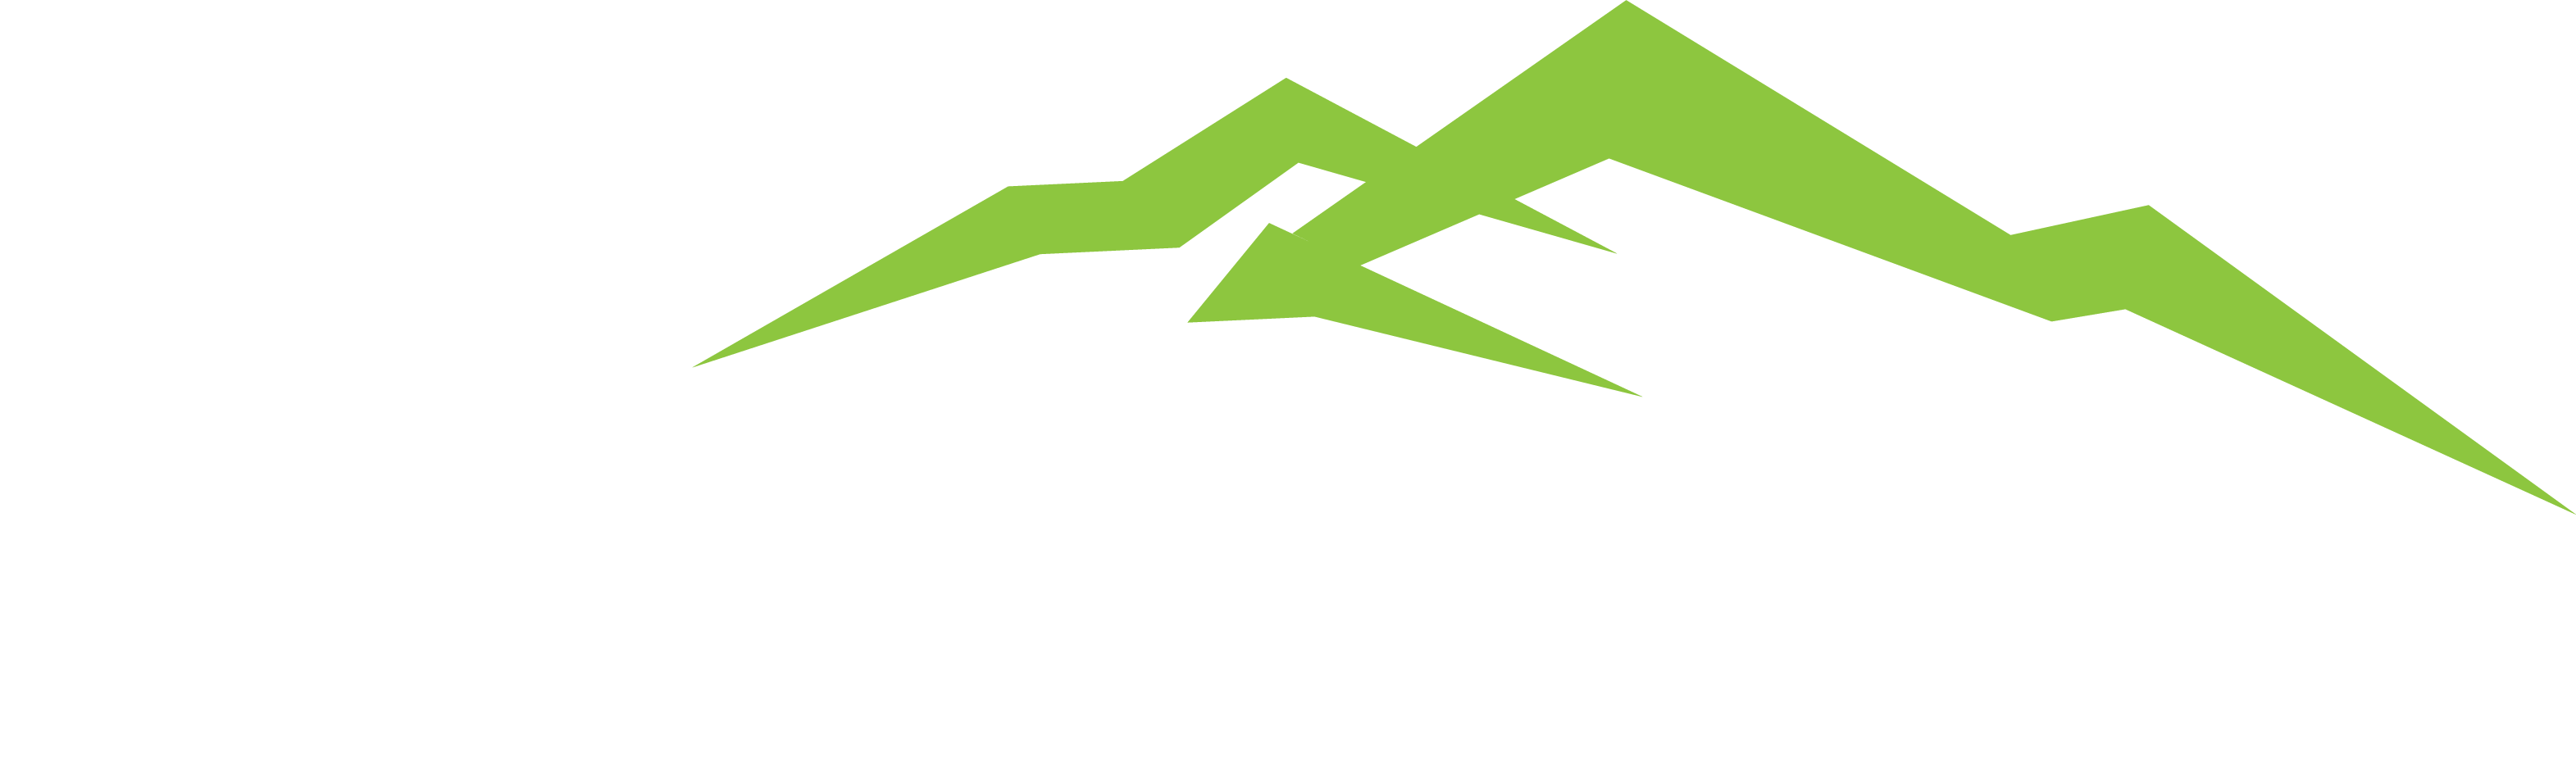 K2 6.0